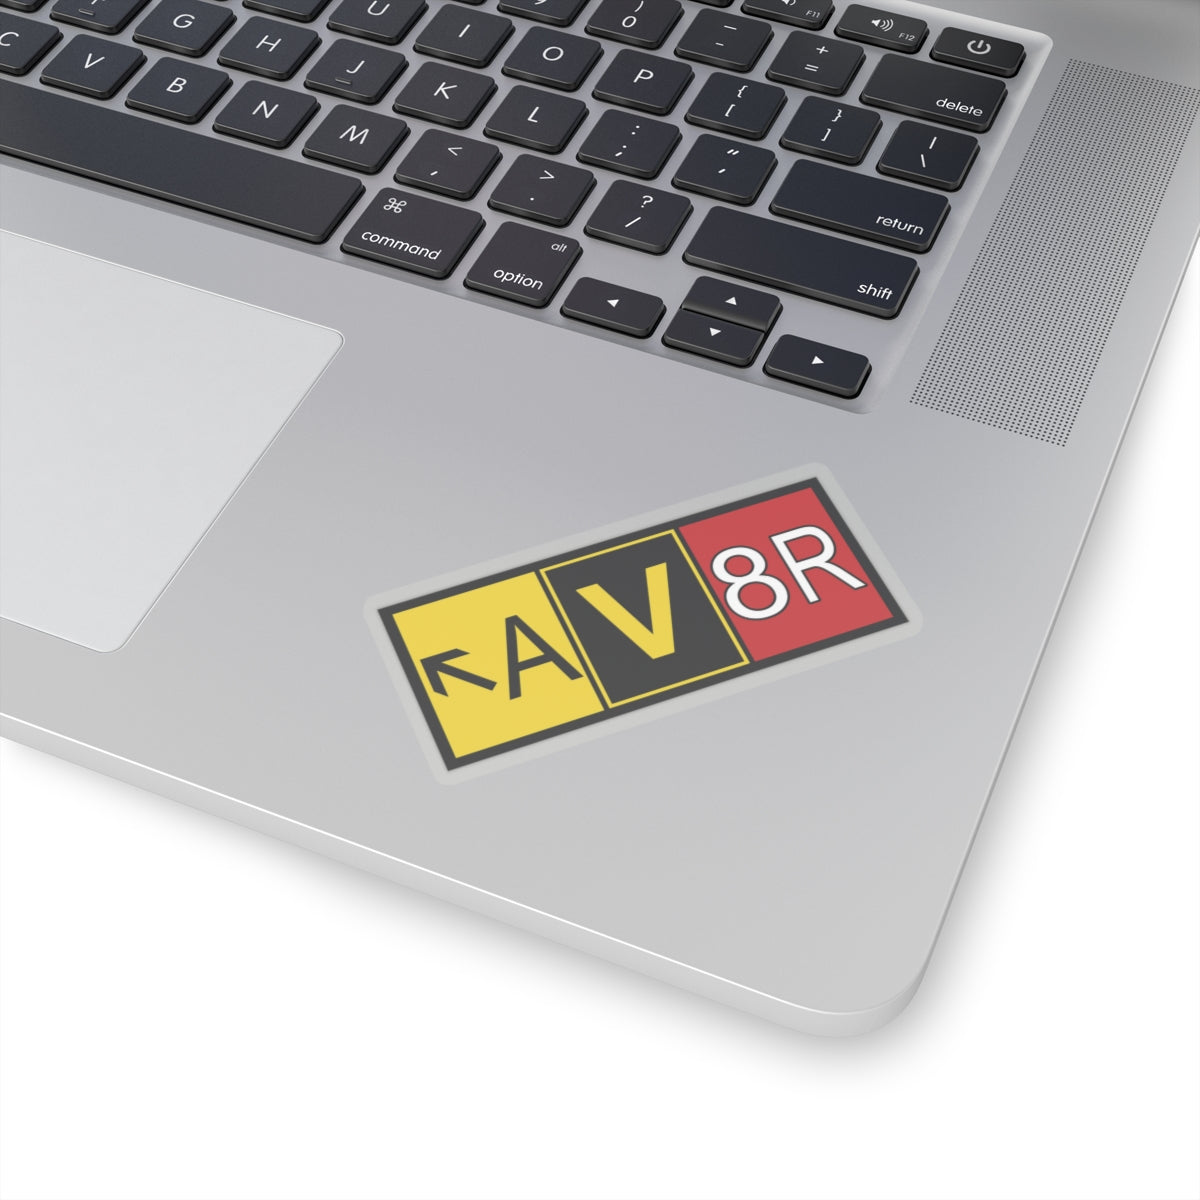 Aviator - AV8R - sticker